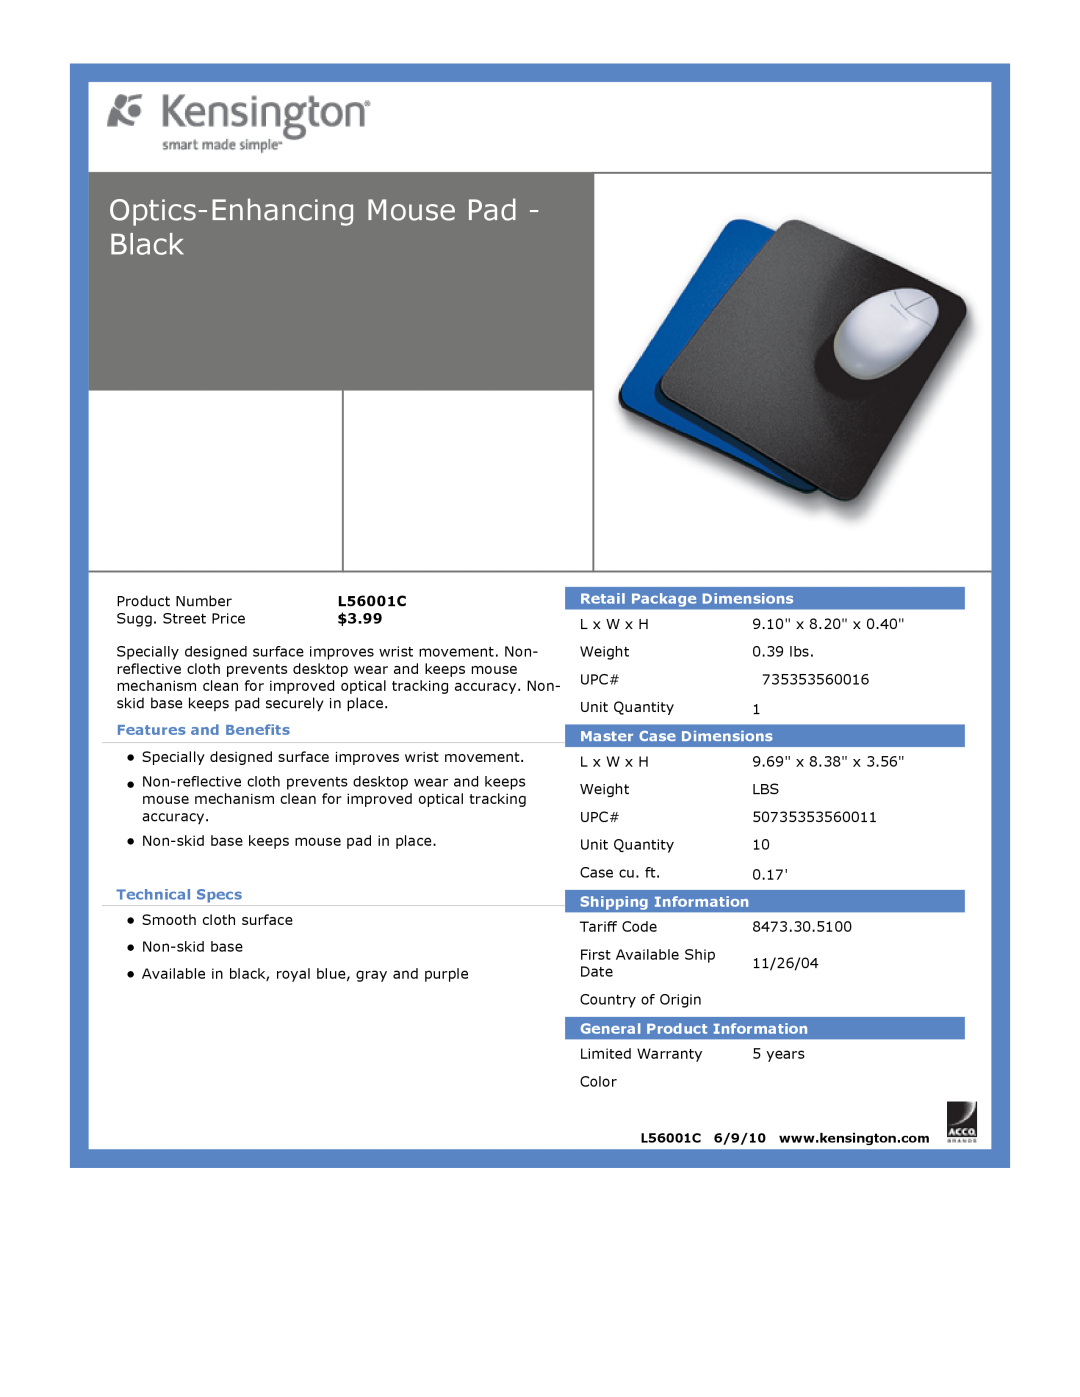 Kensington EU64325 dimensions Optics-EnhancingMouse Pad - Black, $3.99, Features and Benefits, Technical Specs 